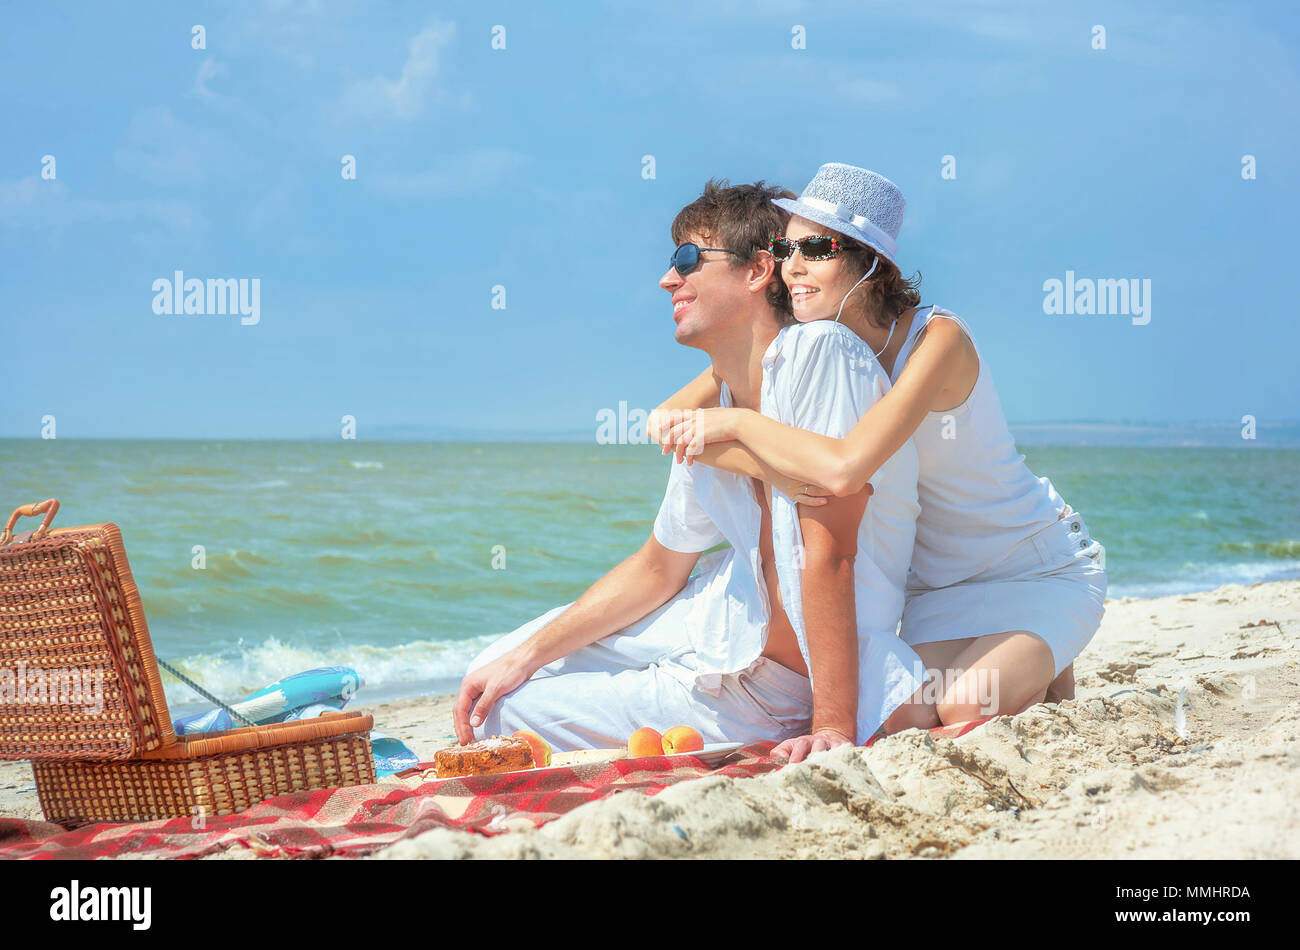 Beautiful young stylish couple enjoying picnic on beach Stock ...